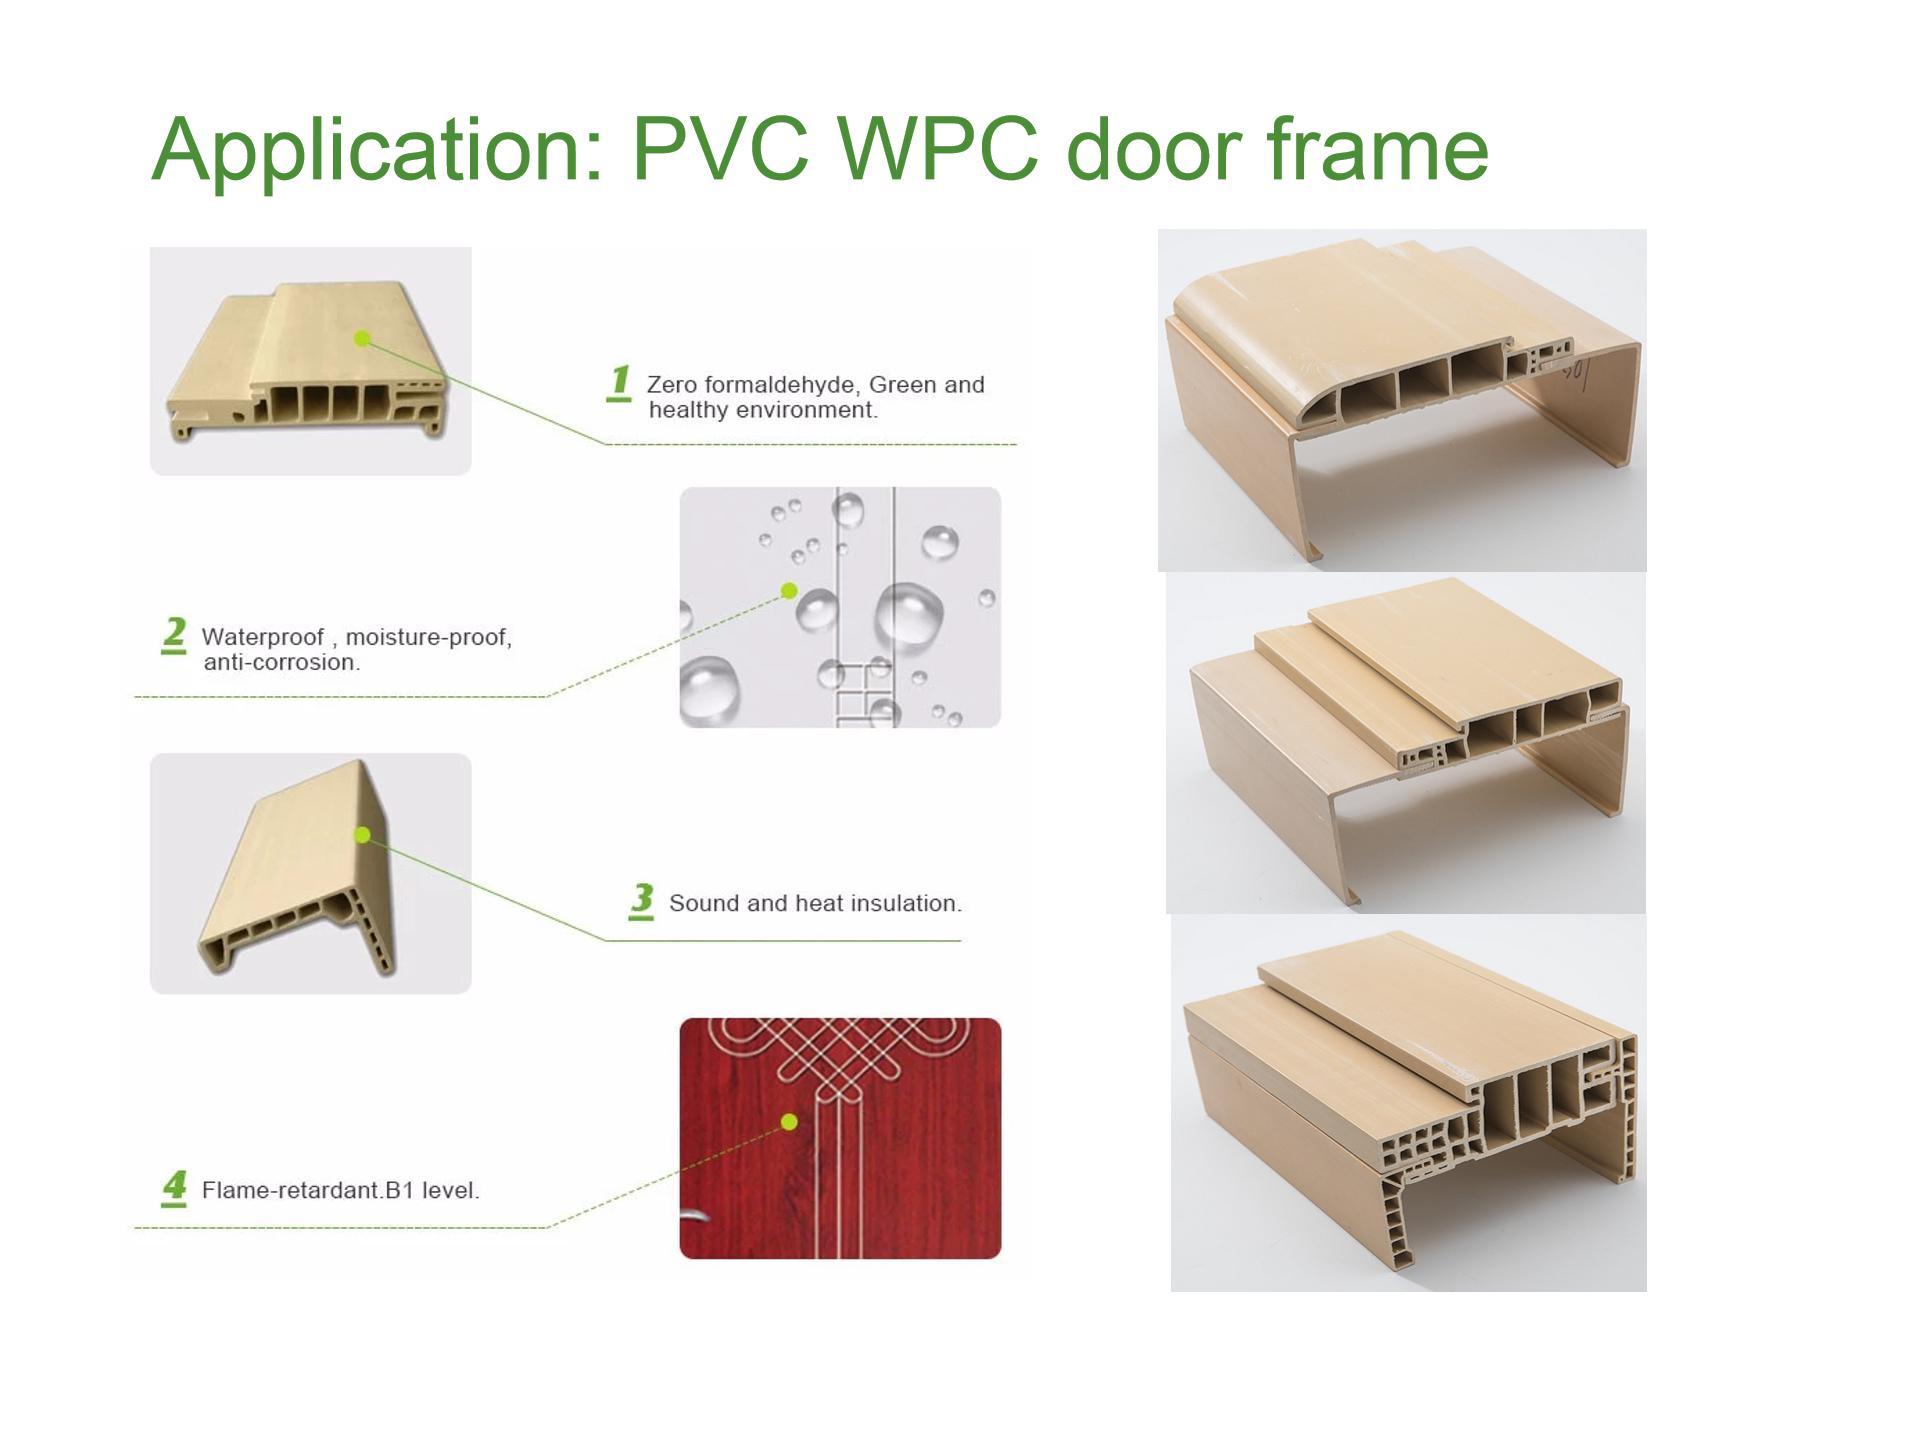 WPC door advantage